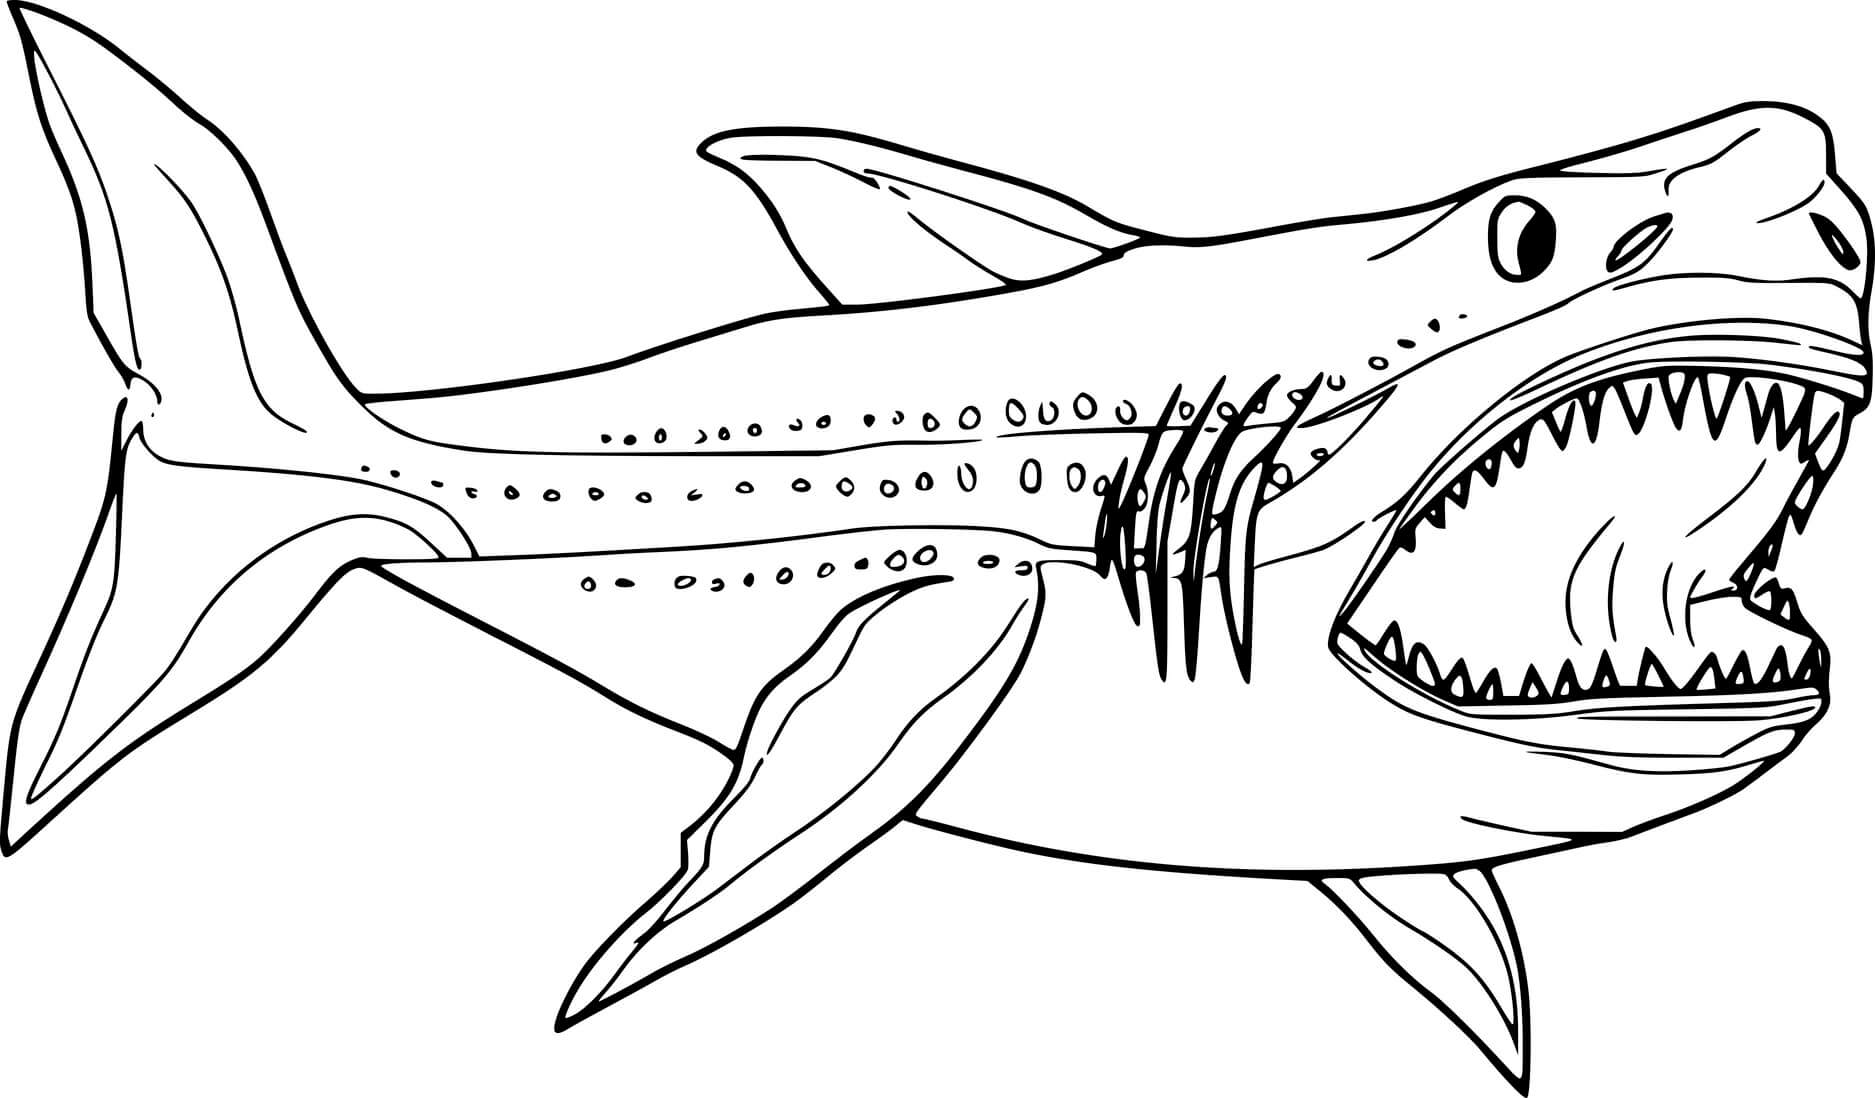 Humorous coloring book fat shark